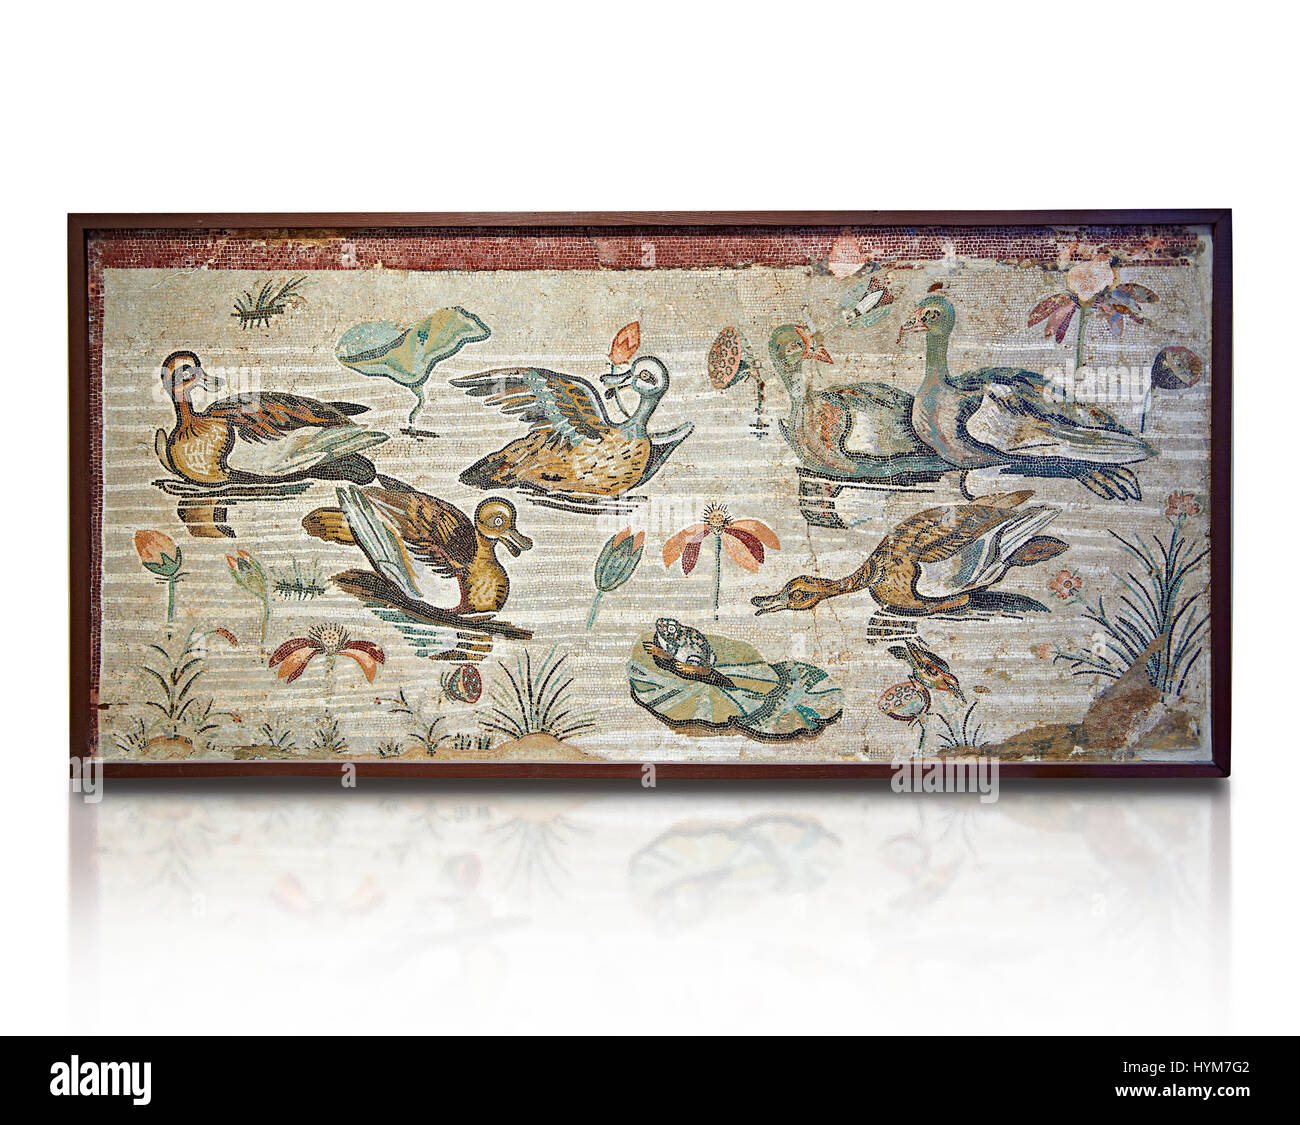 Mosaïque romaine de canards de Pompéi, Naples, Italie Musum archéologique Banque D'Images